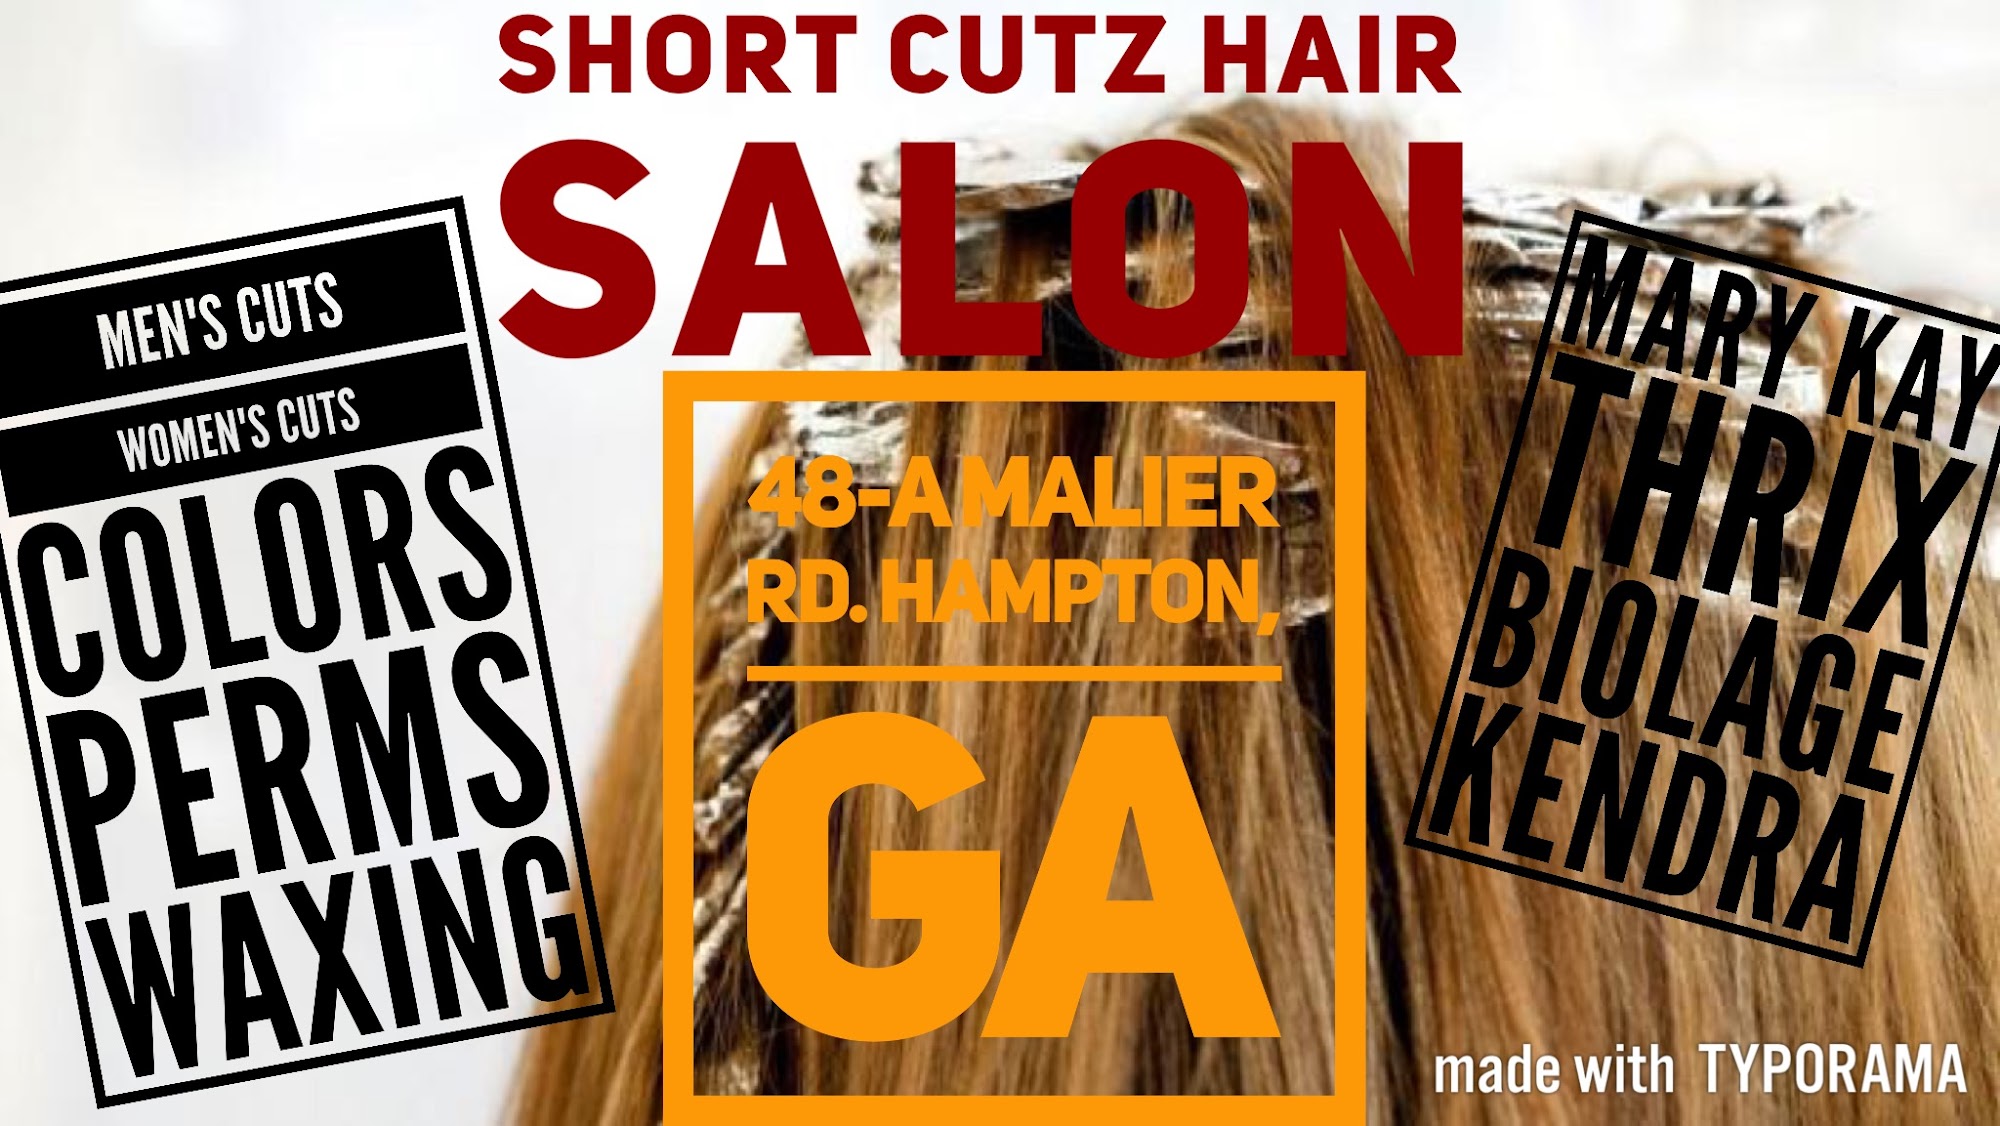 Short Cutz Hair Salon 48-A Malier Rd, Hampton Georgia 30228